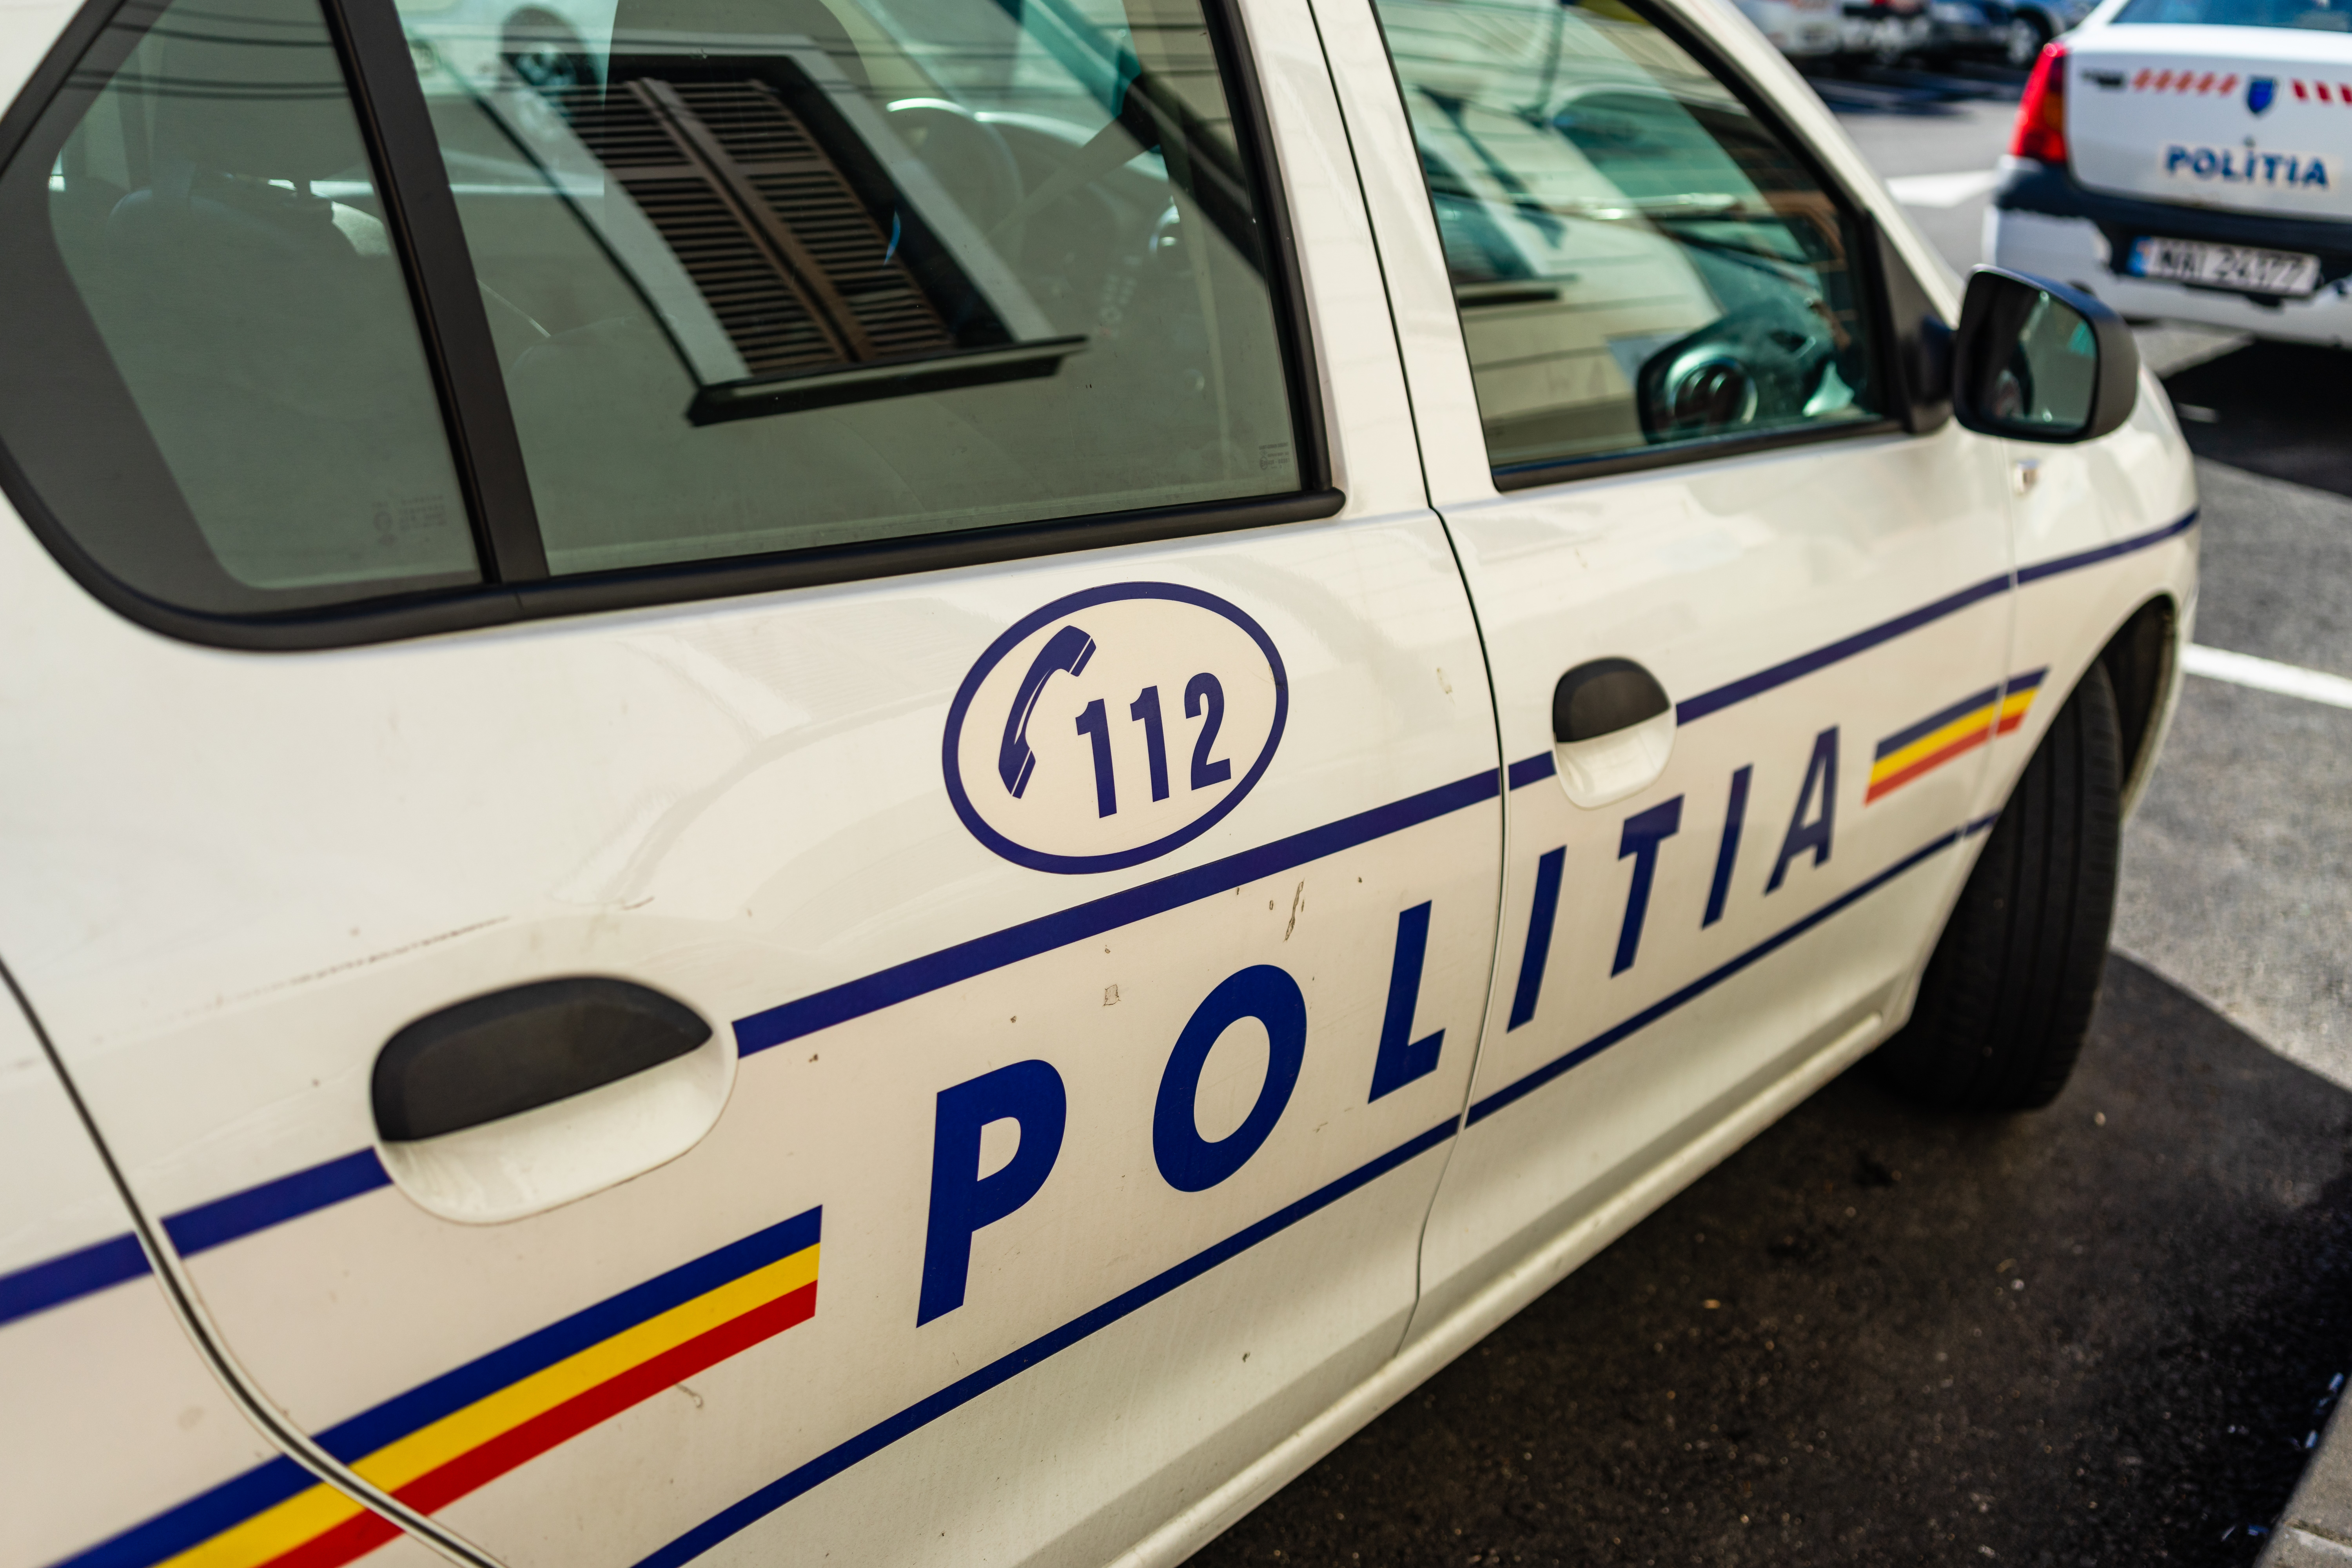 Un microbuz școlar a fost implicat într-un accident, în județul Bacău. Șapte copii au fost transportați la spital